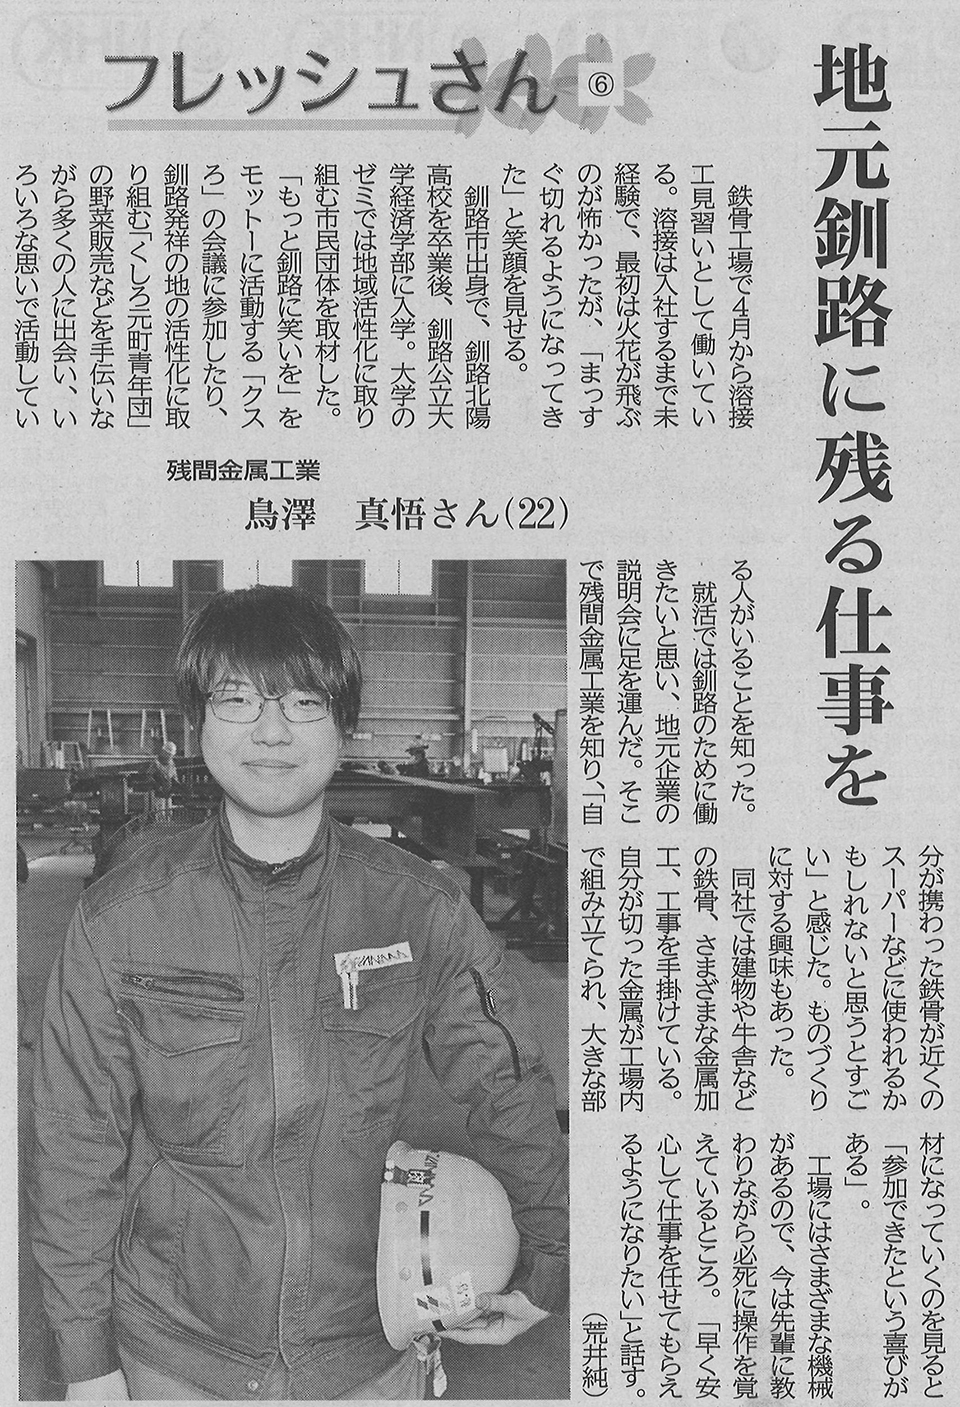 釧路新聞で新入社員の記事が掲載されました。